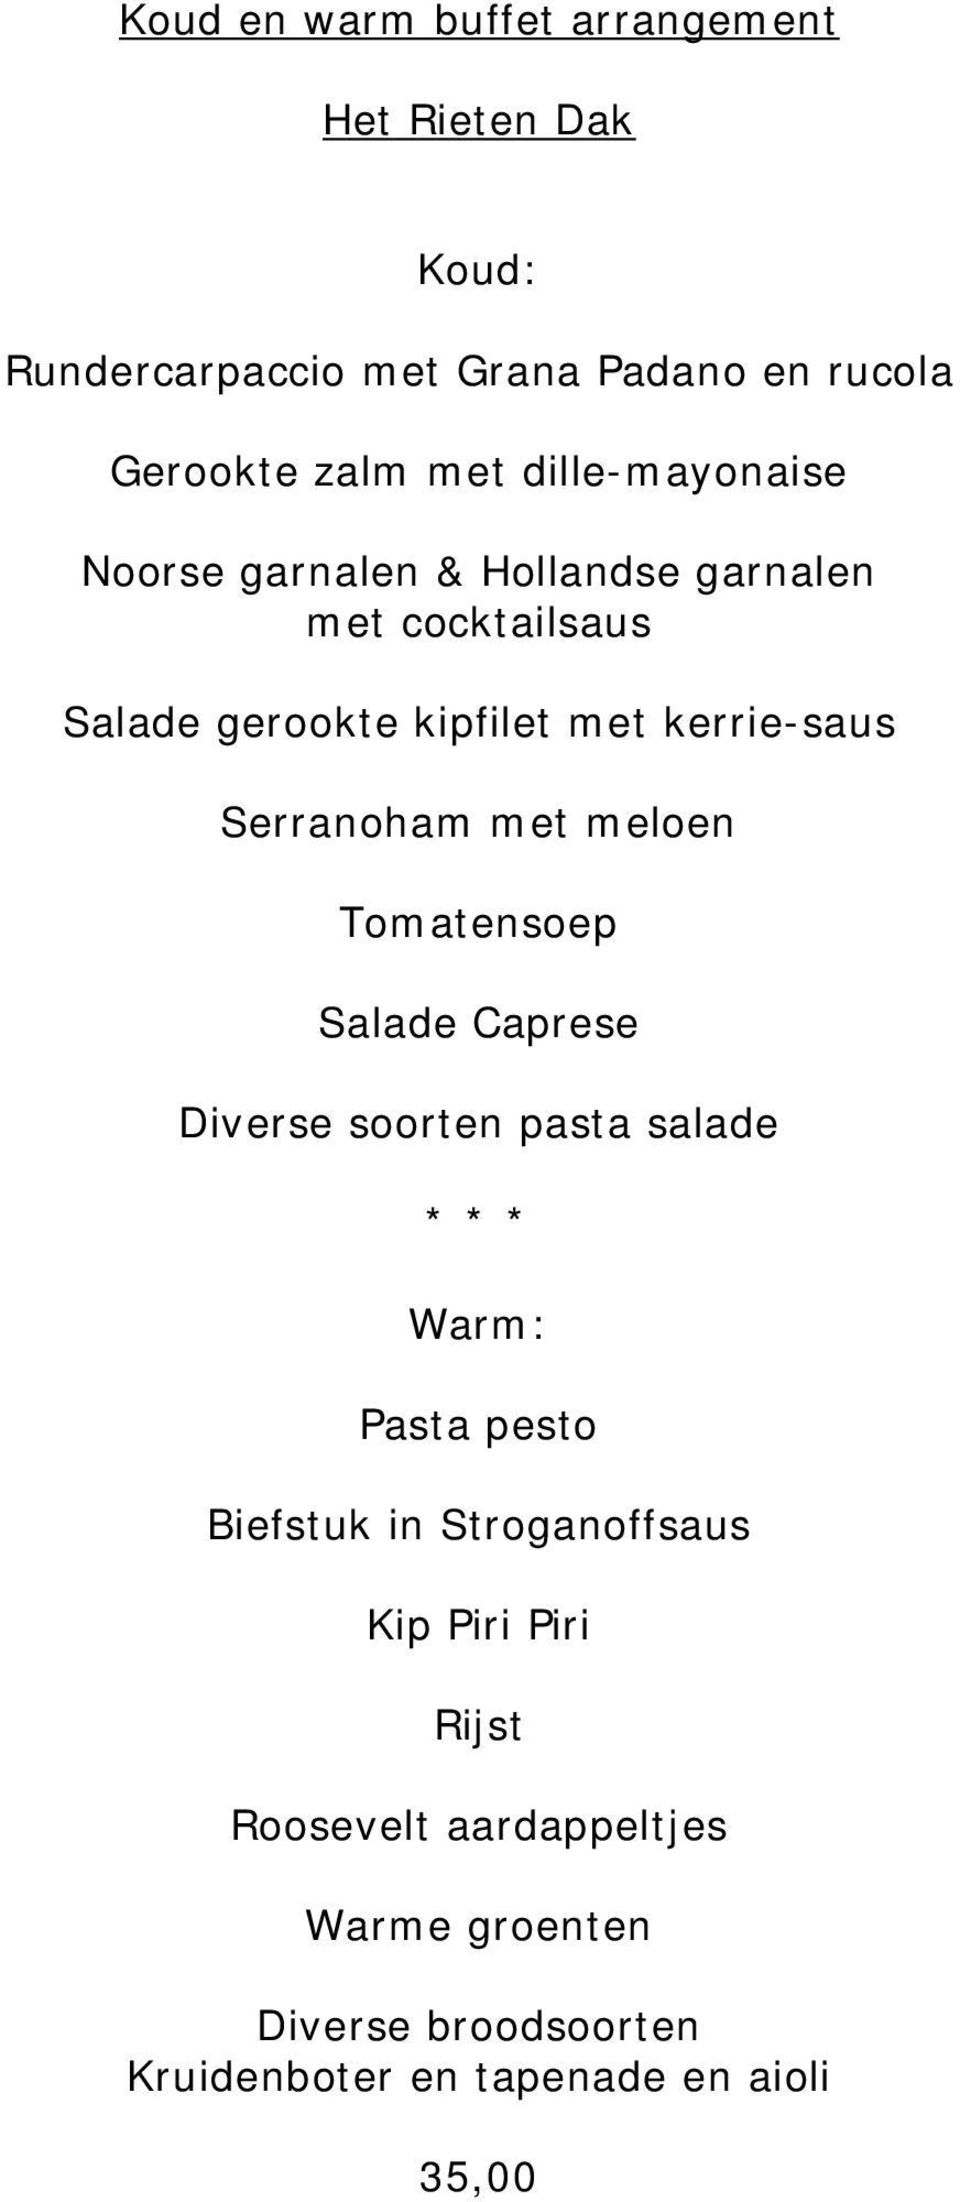 Serranoham met meloen Tomatensoep Salade Caprese Diverse soorten pasta salade * * * Warm: Pasta pesto Biefstuk in